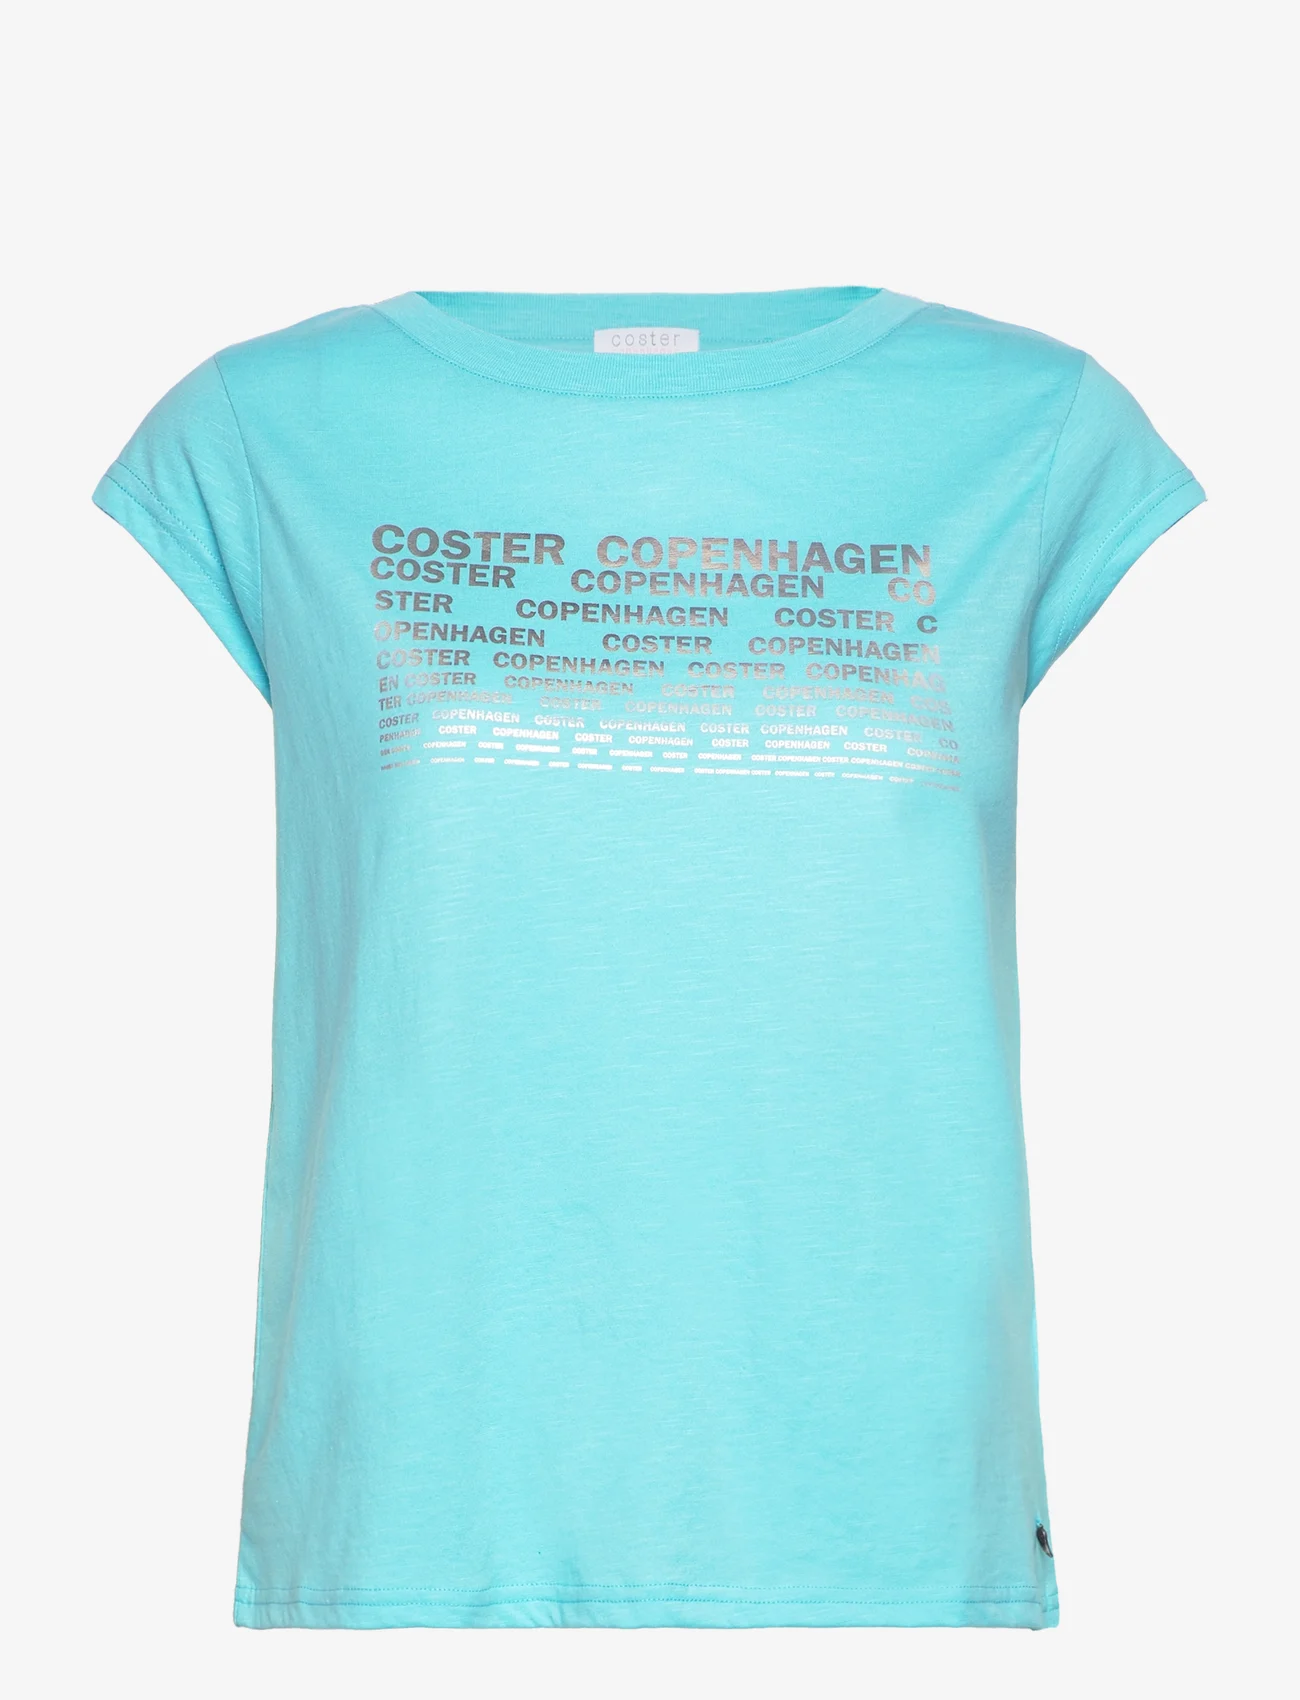 Coster Copenhagen - T-shirt with Coster print - Cap sle - t-shirts - aqua blue - 0